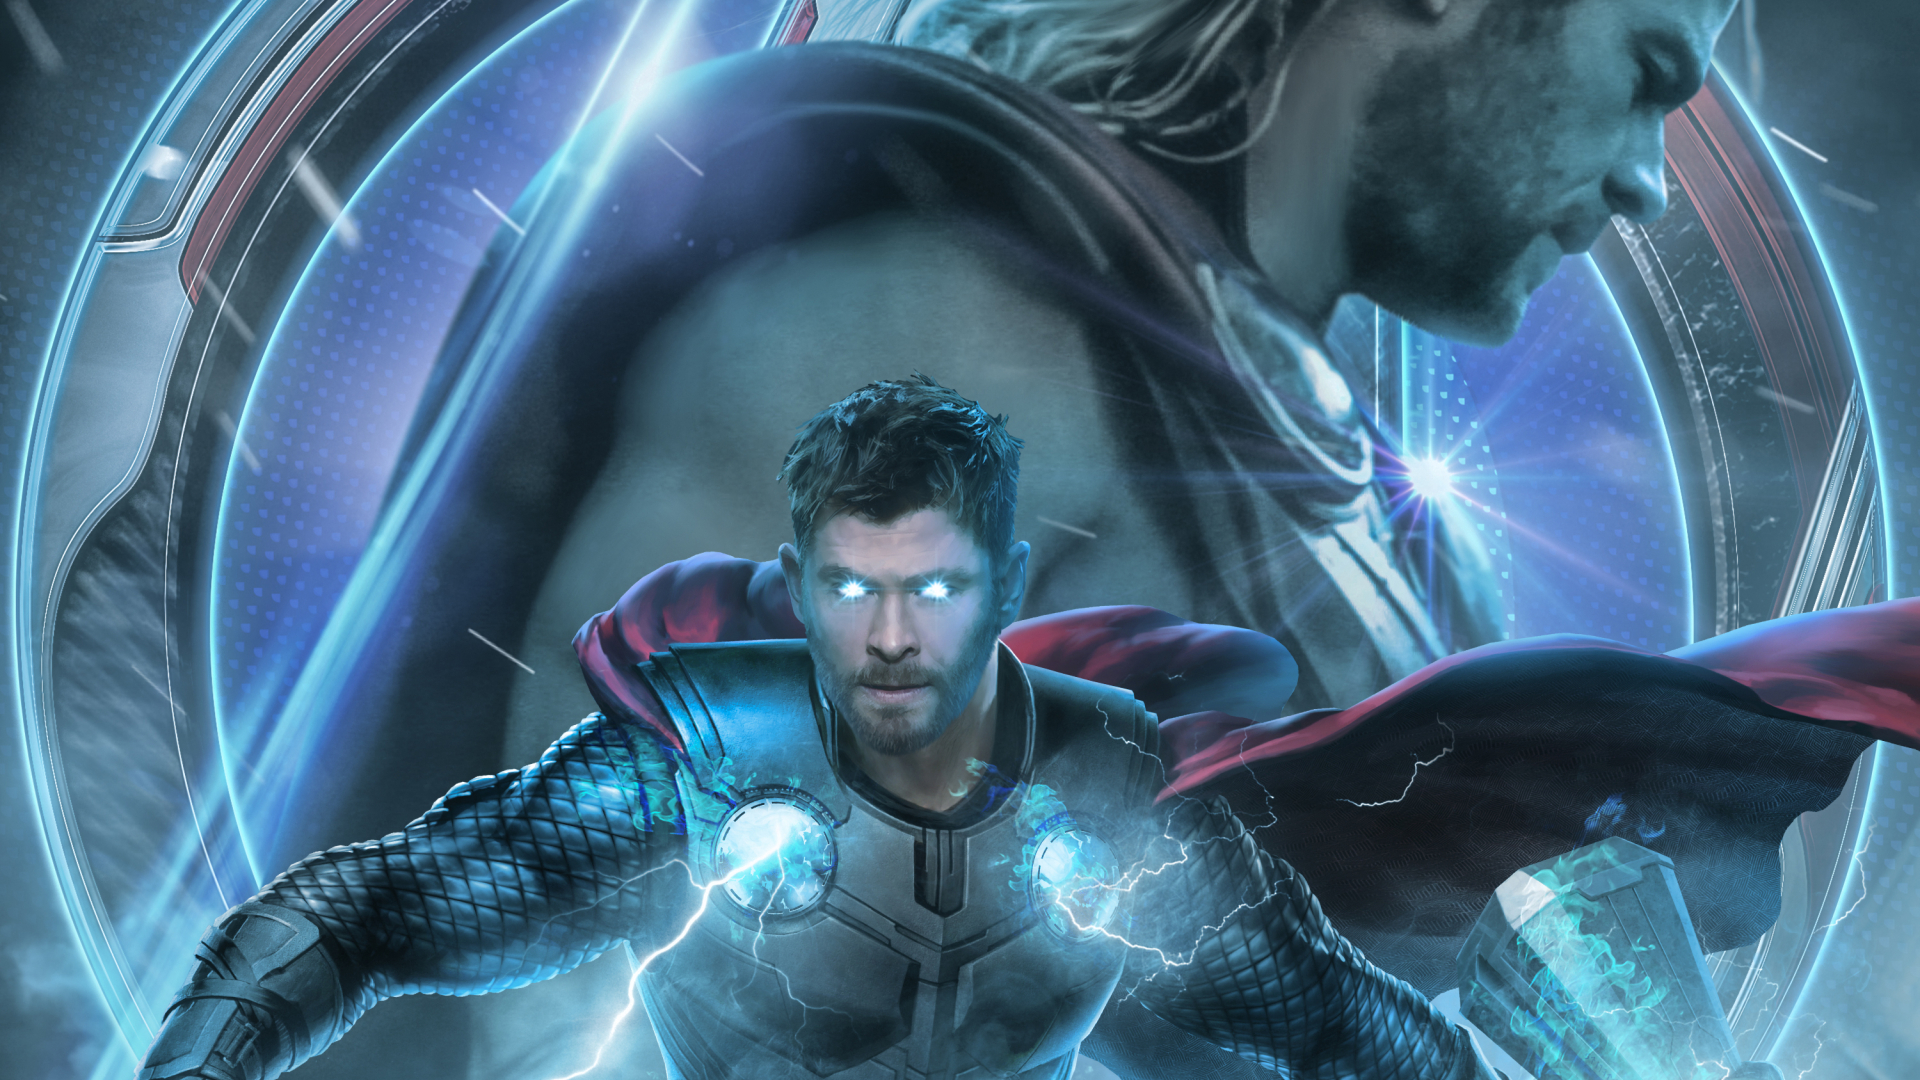 1920x1080 Avengers  Endgame  Thor Poster Artwork 1080P  